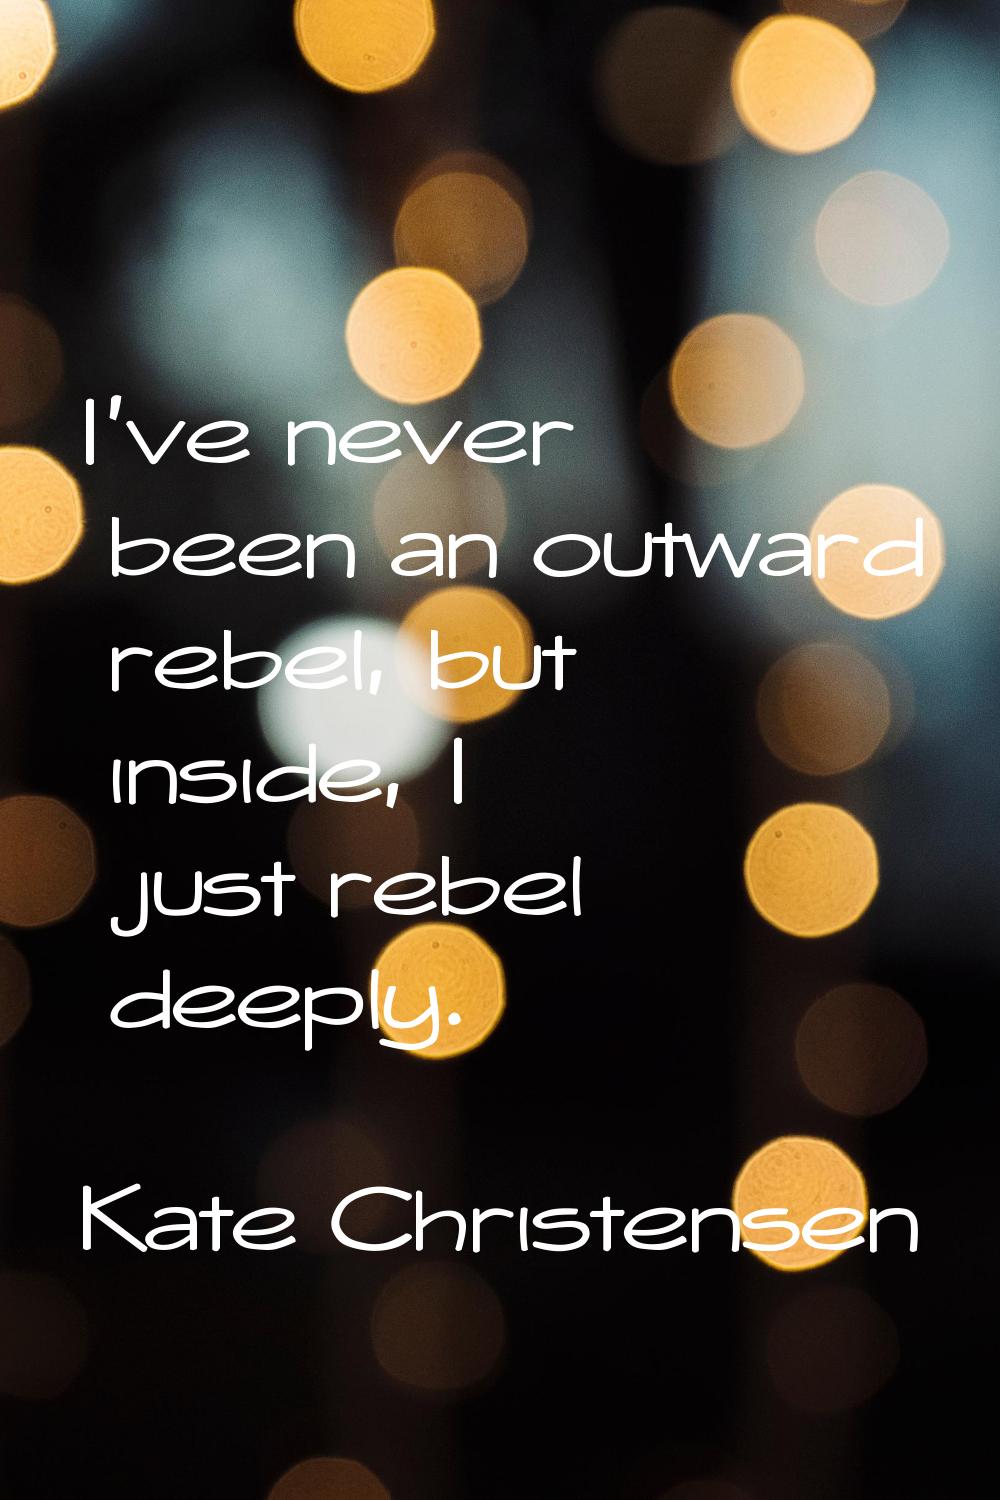 I've never been an outward rebel, but inside, I just rebel deeply.